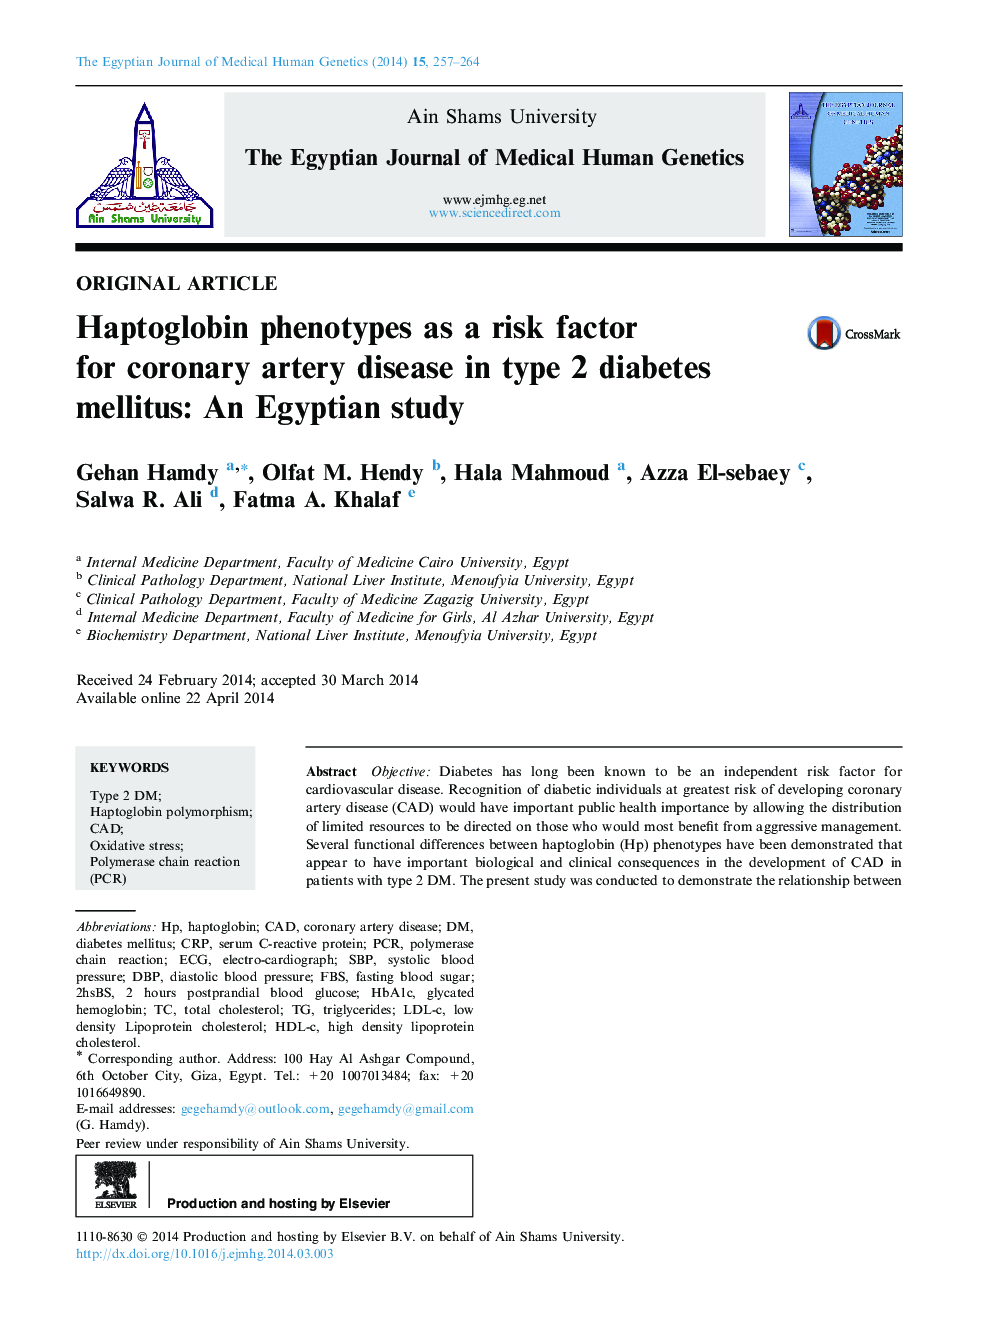 فنوتیپ هاپتوگلوبین به عنوان یک عامل خطر برای بیماری عروق کرونر در دیابت نوع 2: یک مطالعه مصری 